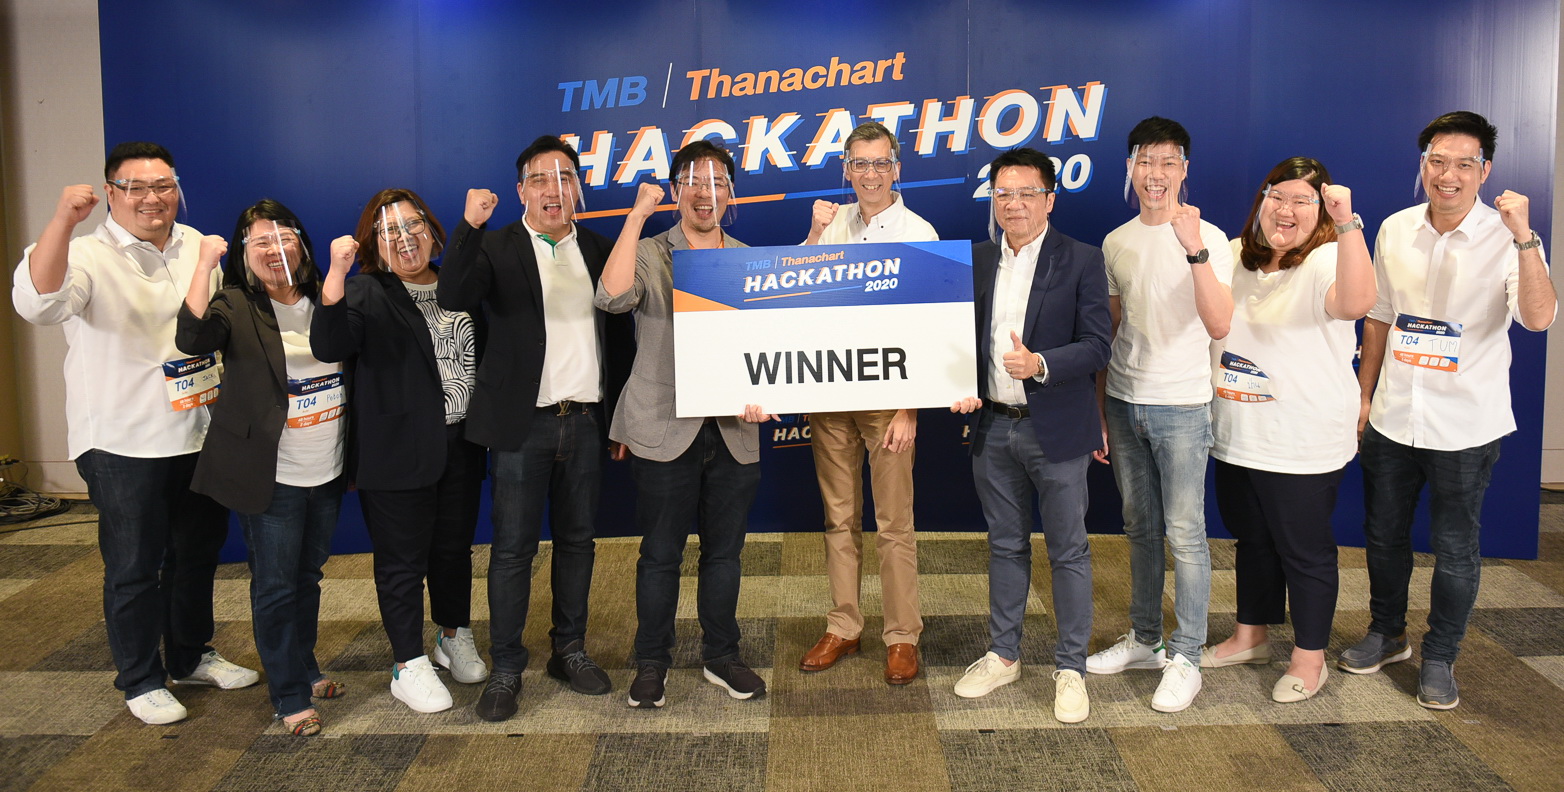 ทีเอ็มบีและธนชาต จัดกิจกรรม TMB l Thanachart Hackathon 2020 อีกขั้นของธนาคารยุคใหม่ มุ่งสร้าง Financial